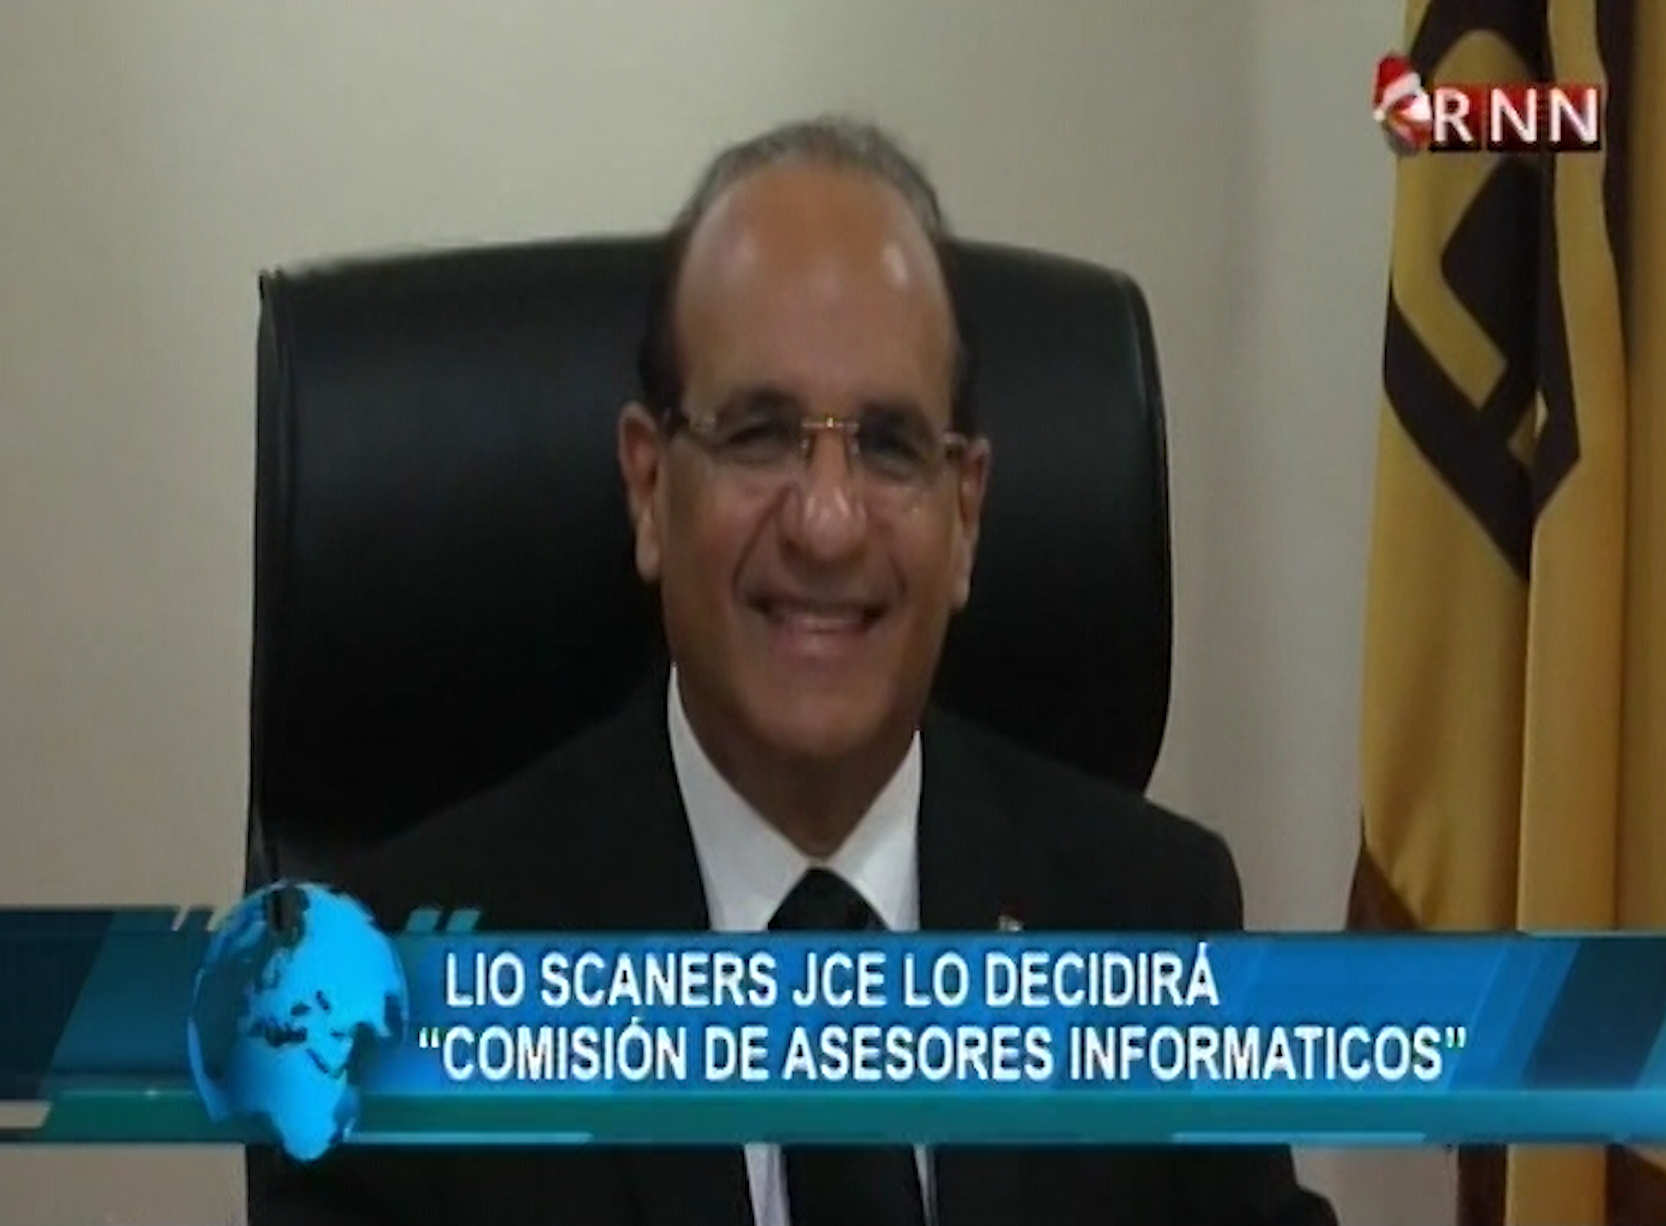 Noticias RNN: Lío De Escáneres De La JCE Lo Decidirá La Comisión De Asesores Informáticos